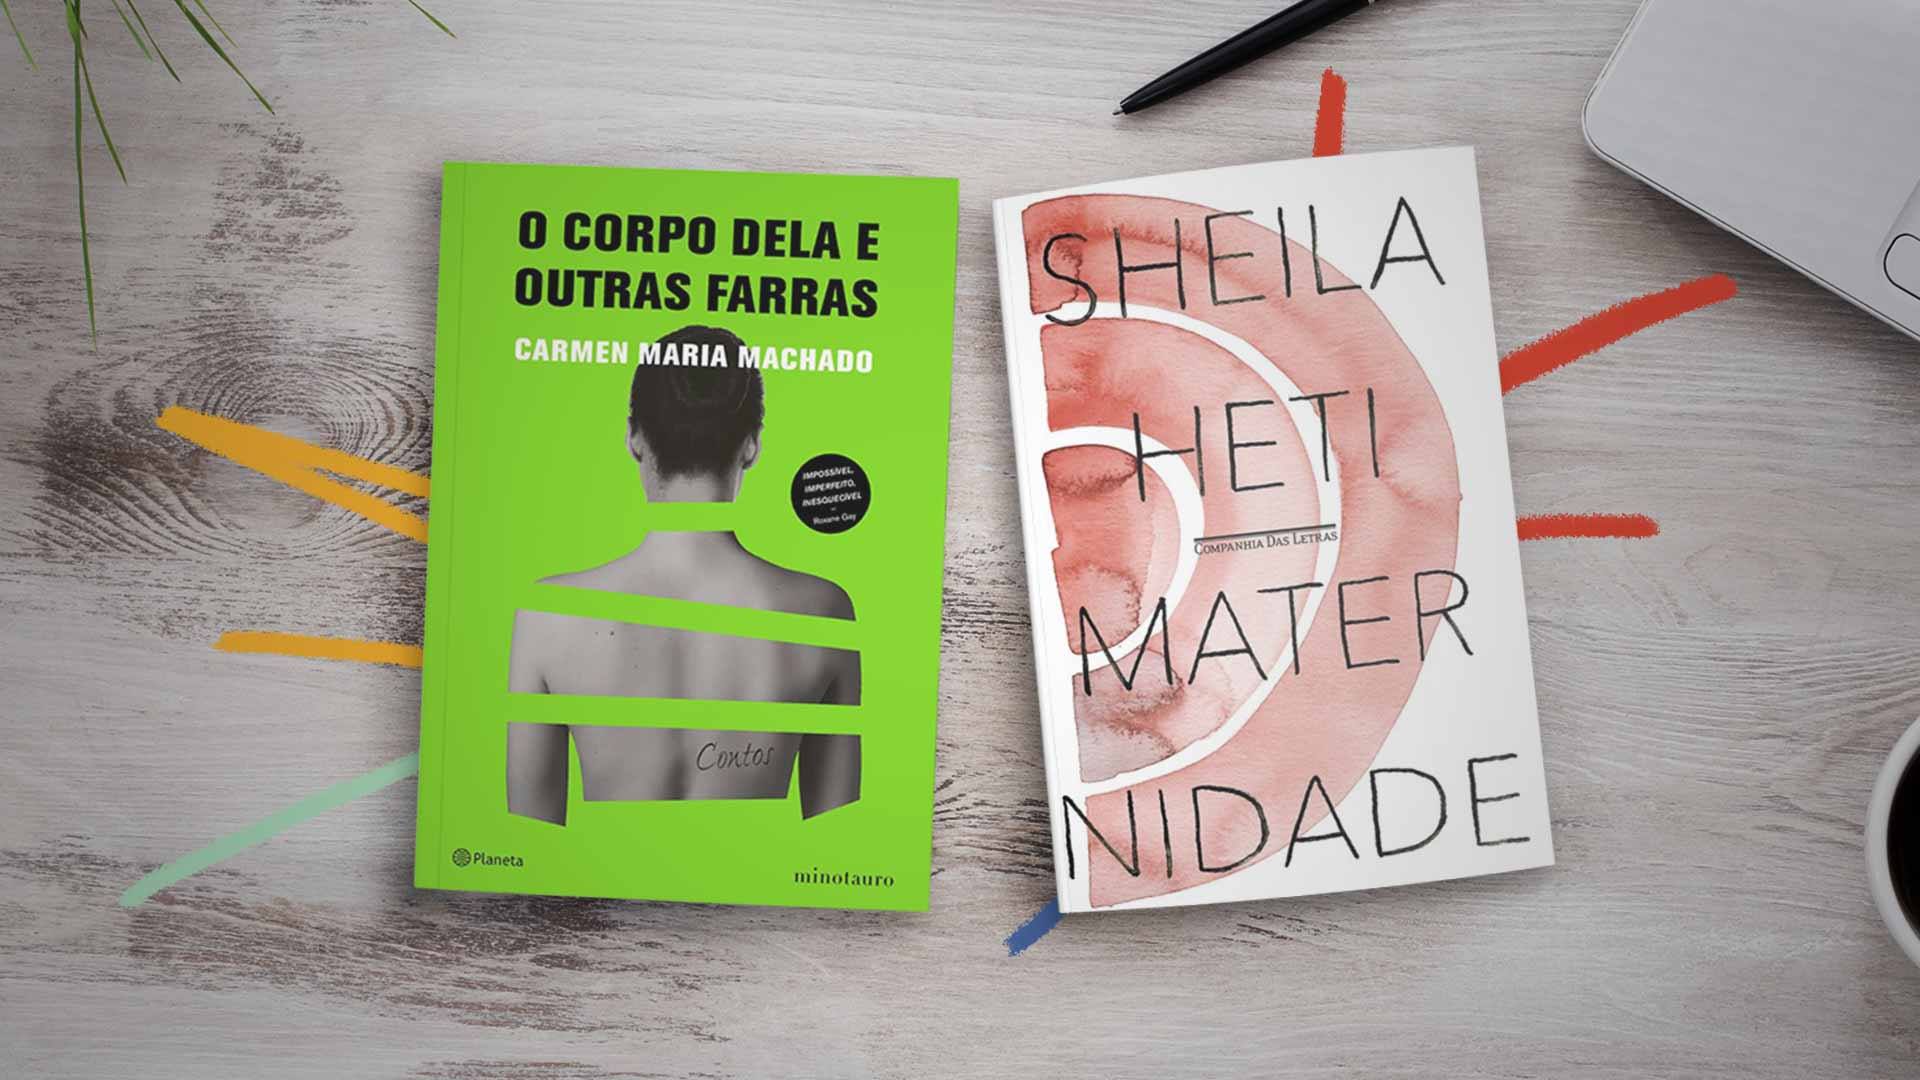 Imagem da capa dos livros "Maternidade", de Sheila Heti, e "O corpo dela e outras farras", de Carmen Maria Machado. Os livros estão sob a mesa